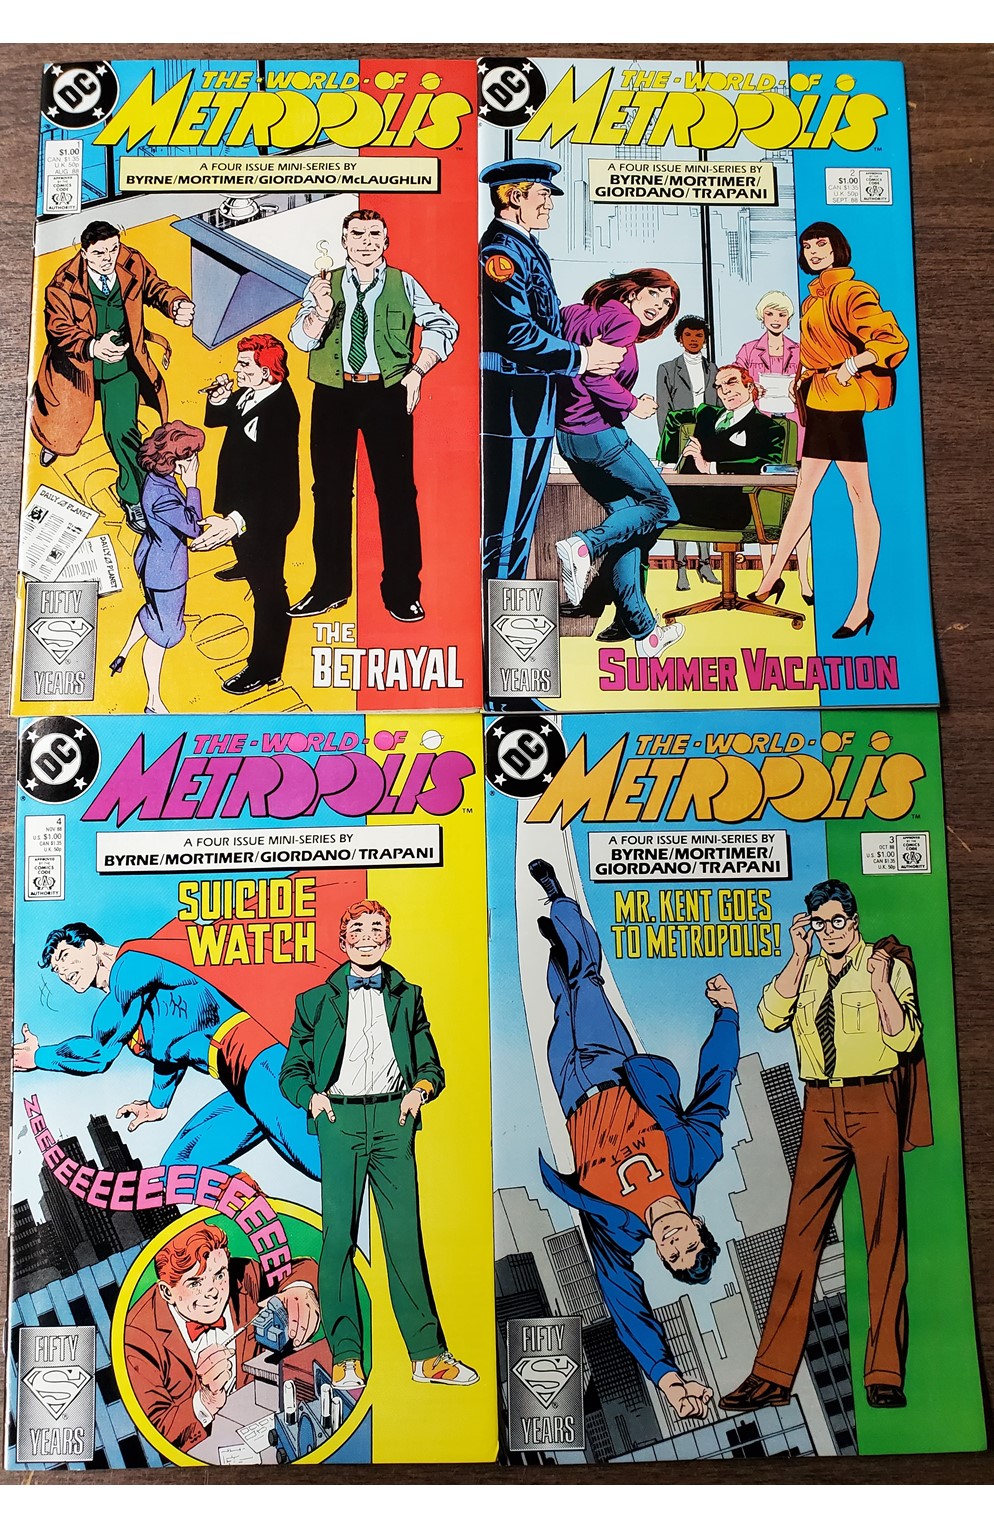 World of Metropolis #1-4 (DC 1988) Set